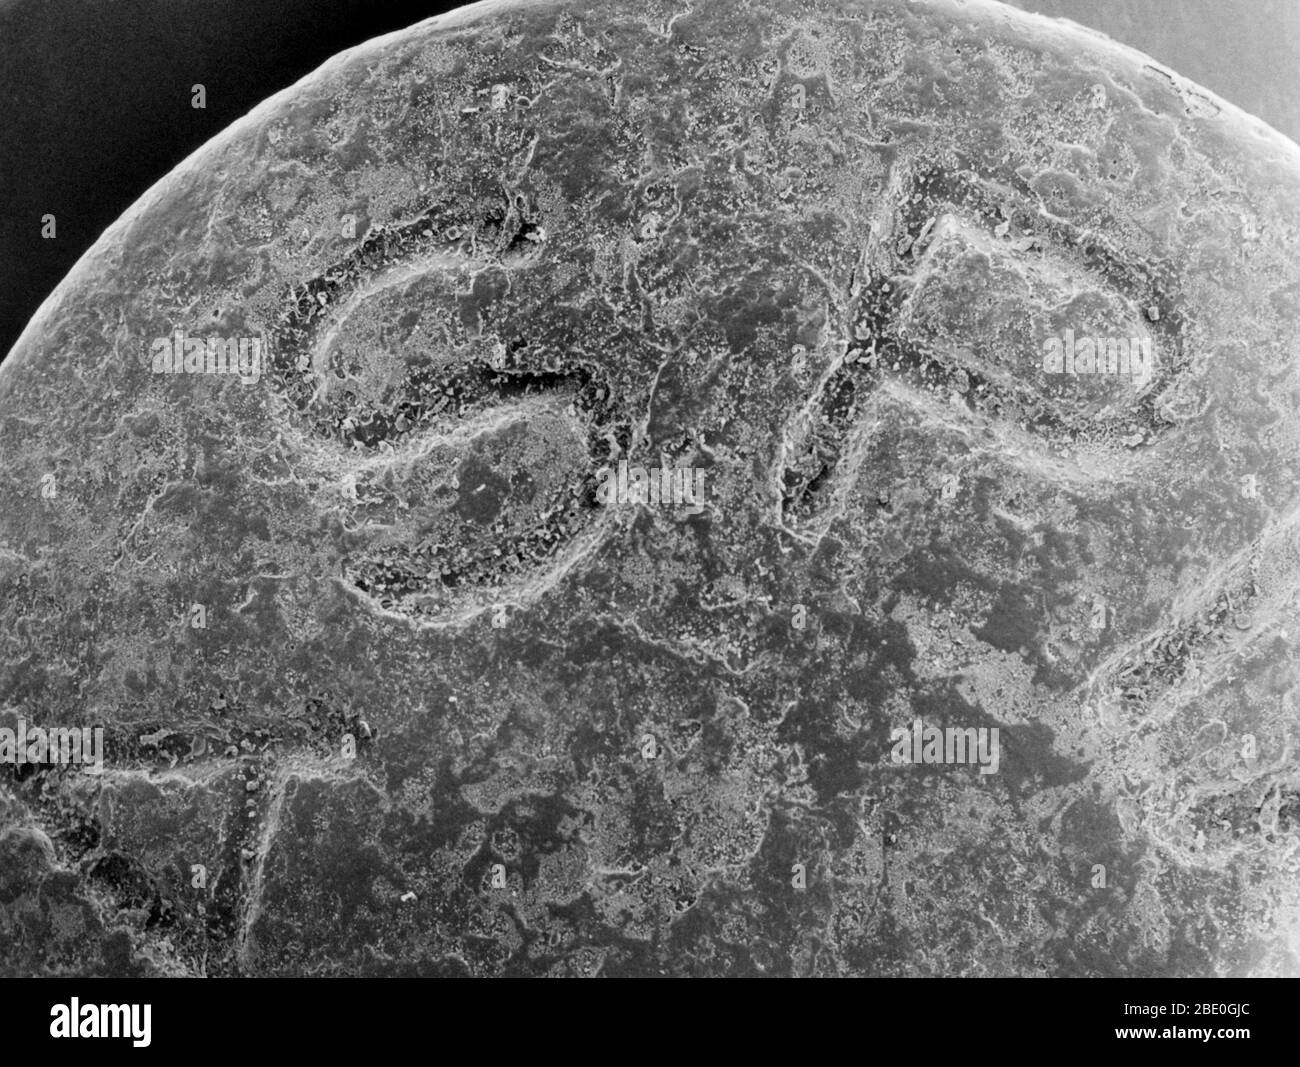 Scansione di una micrografica elettronica (SEM) di una tavoletta di aspirina. Le lettere "A S P" nella parola aspirina sono visibili sulla superficie della tavoletta. La foto mostra che la compressa apparentemente liscia ha una composizione eterogenea. 60x a 8x10'. Foto Stock